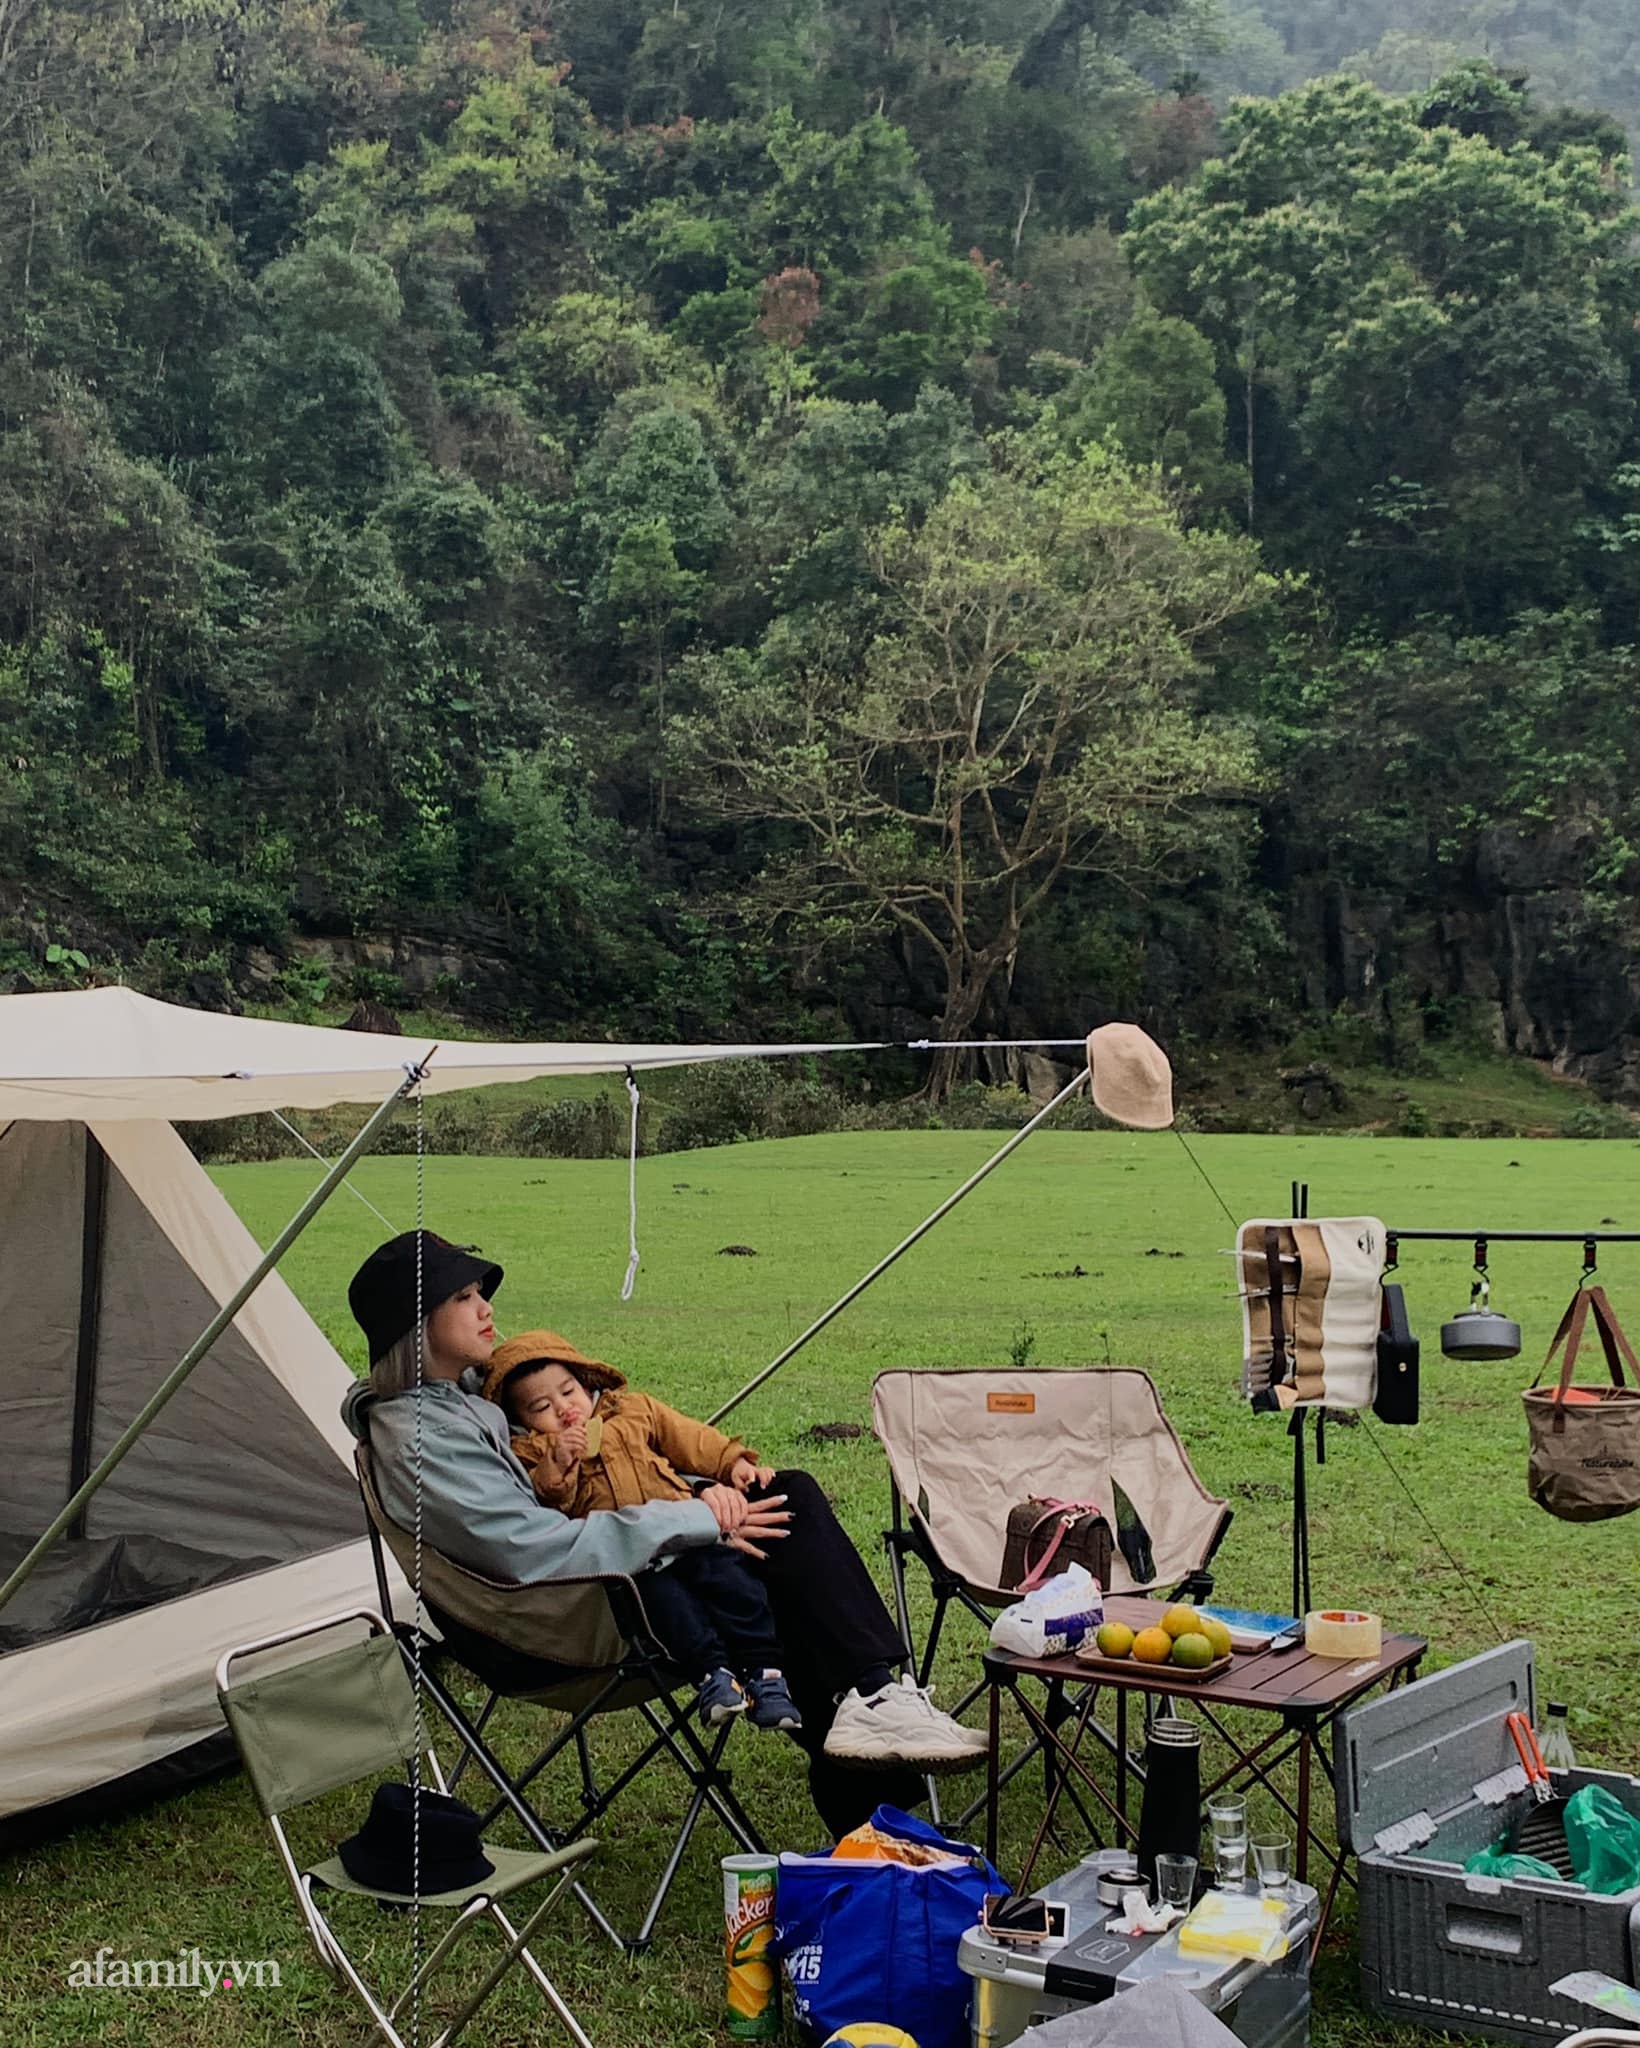 1001 trải nghiệm thực của các gia đình đã đi camping: Tiết lộ cách tế nhị để giải quyết nhu cầu cá nhân và mục đích lớn lao hơn cả việc được đi chơi - Ảnh 2.